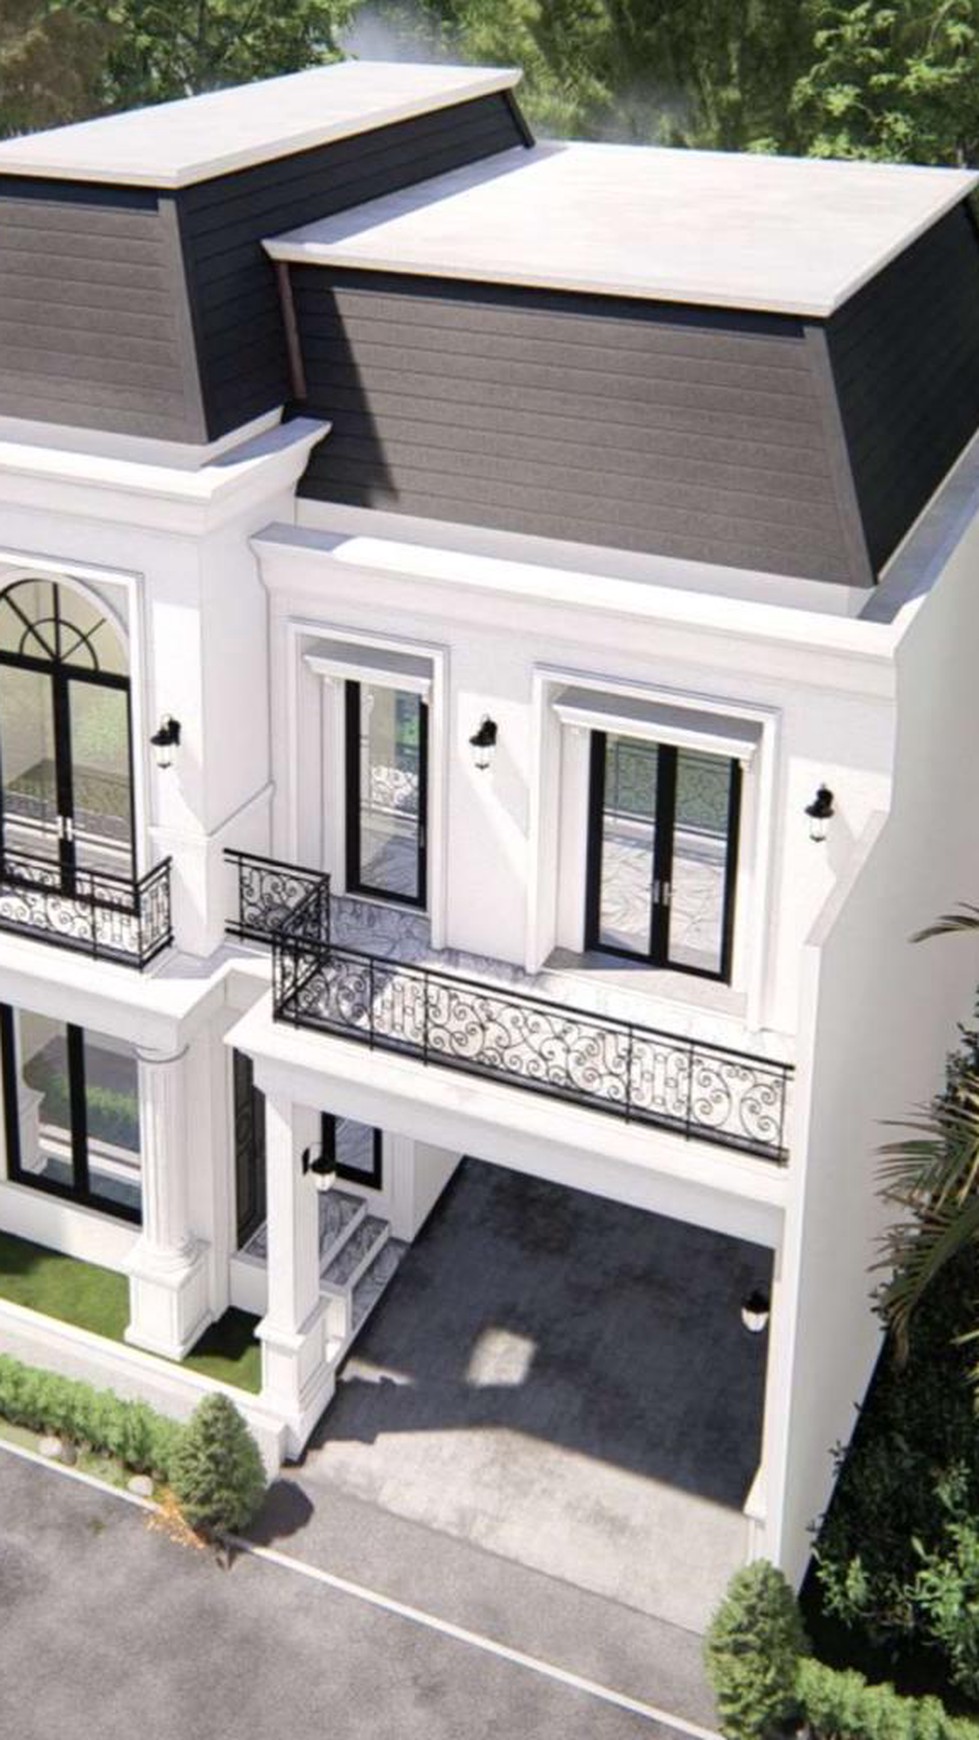 Rumah Baru dengan Kolam Renang, Desain Mewah di Bintaro Jaya Sektor 3 